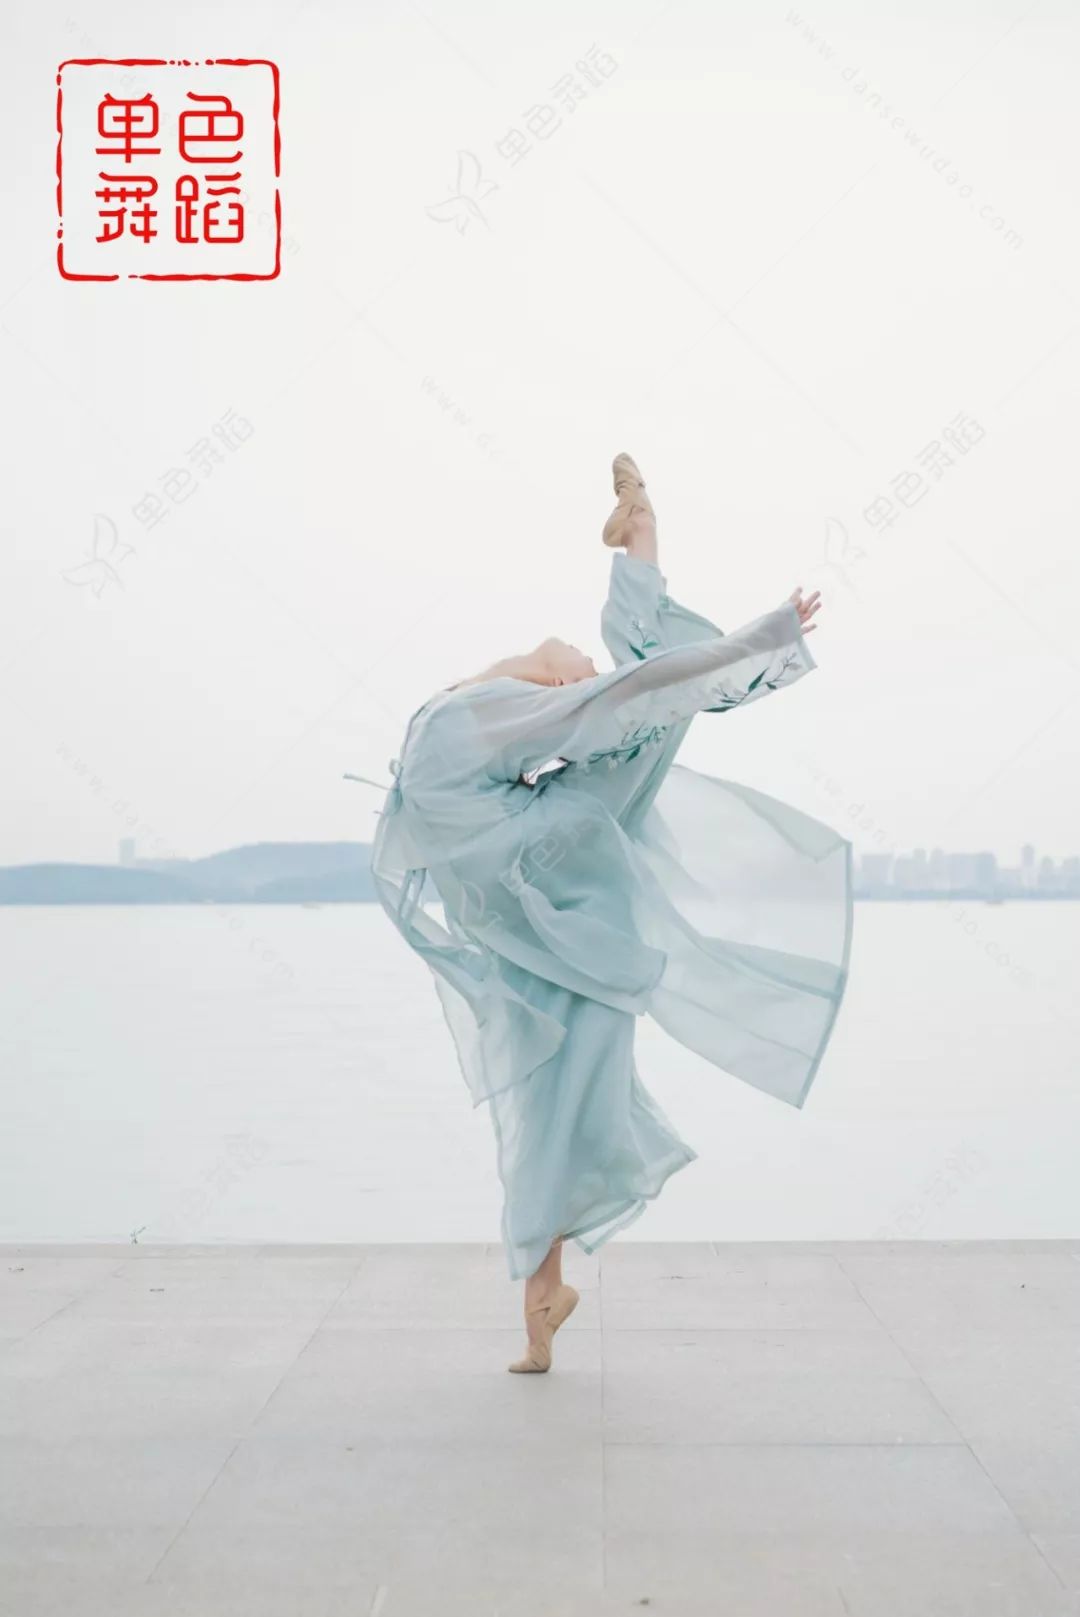 雪雪老师特别福利:88集中国舞基本功教学免费送!_舞蹈